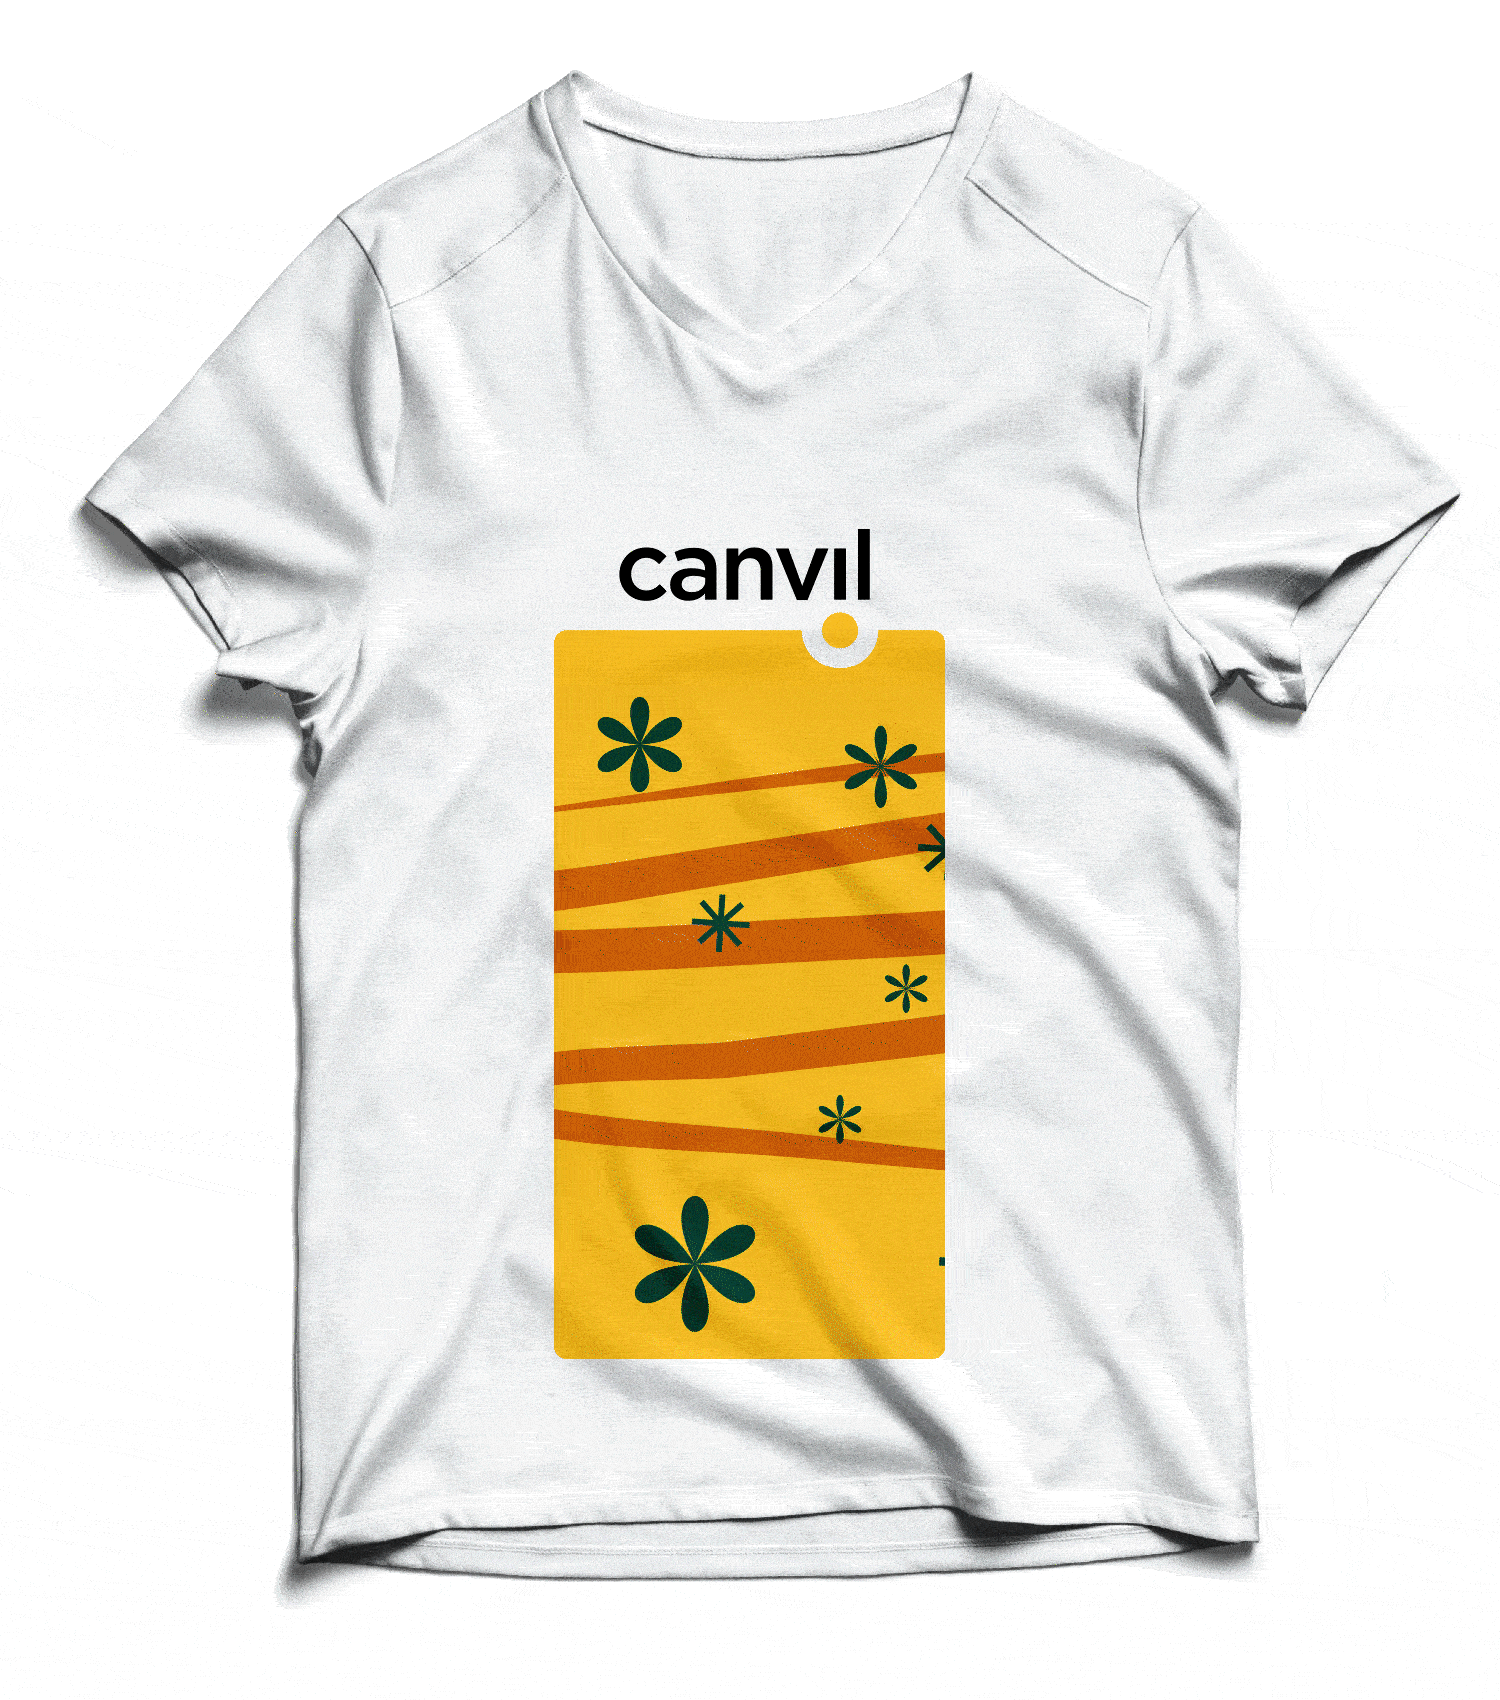 Canvil projekt na koszulce